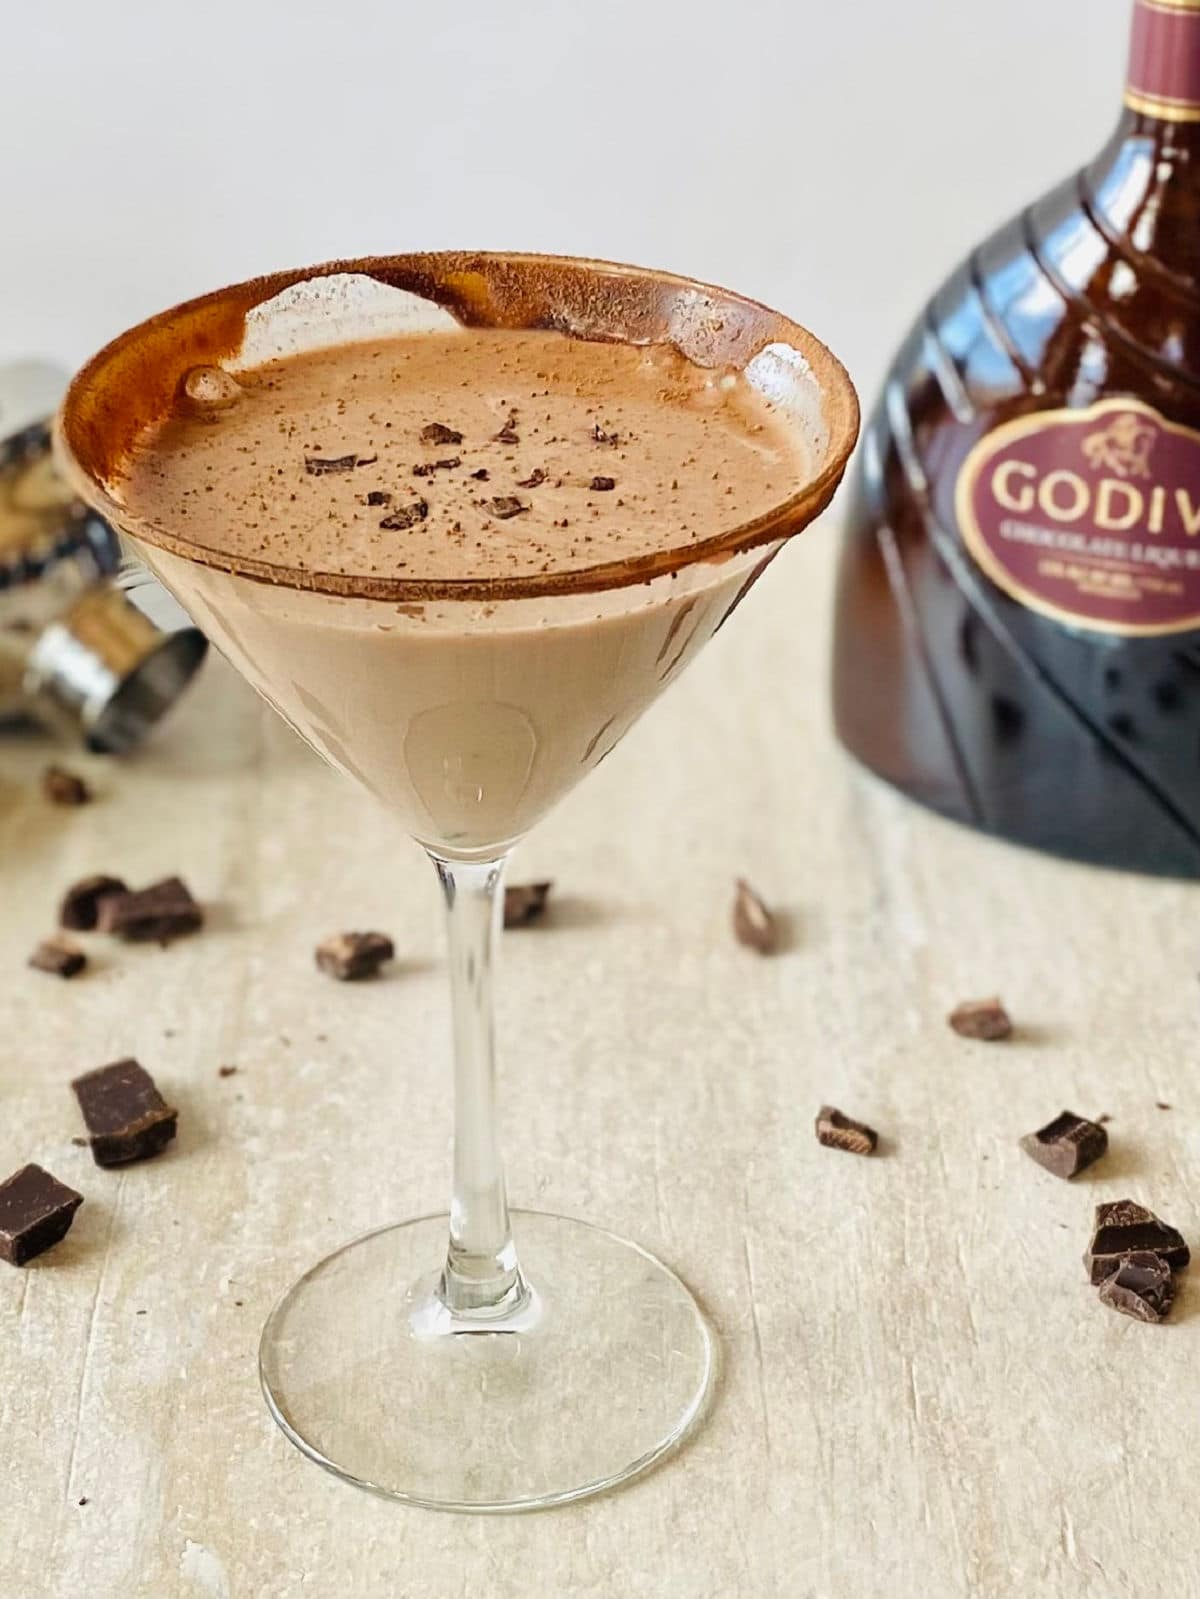 godiva chocolate martini in a martini glass with godiva liqueur in background